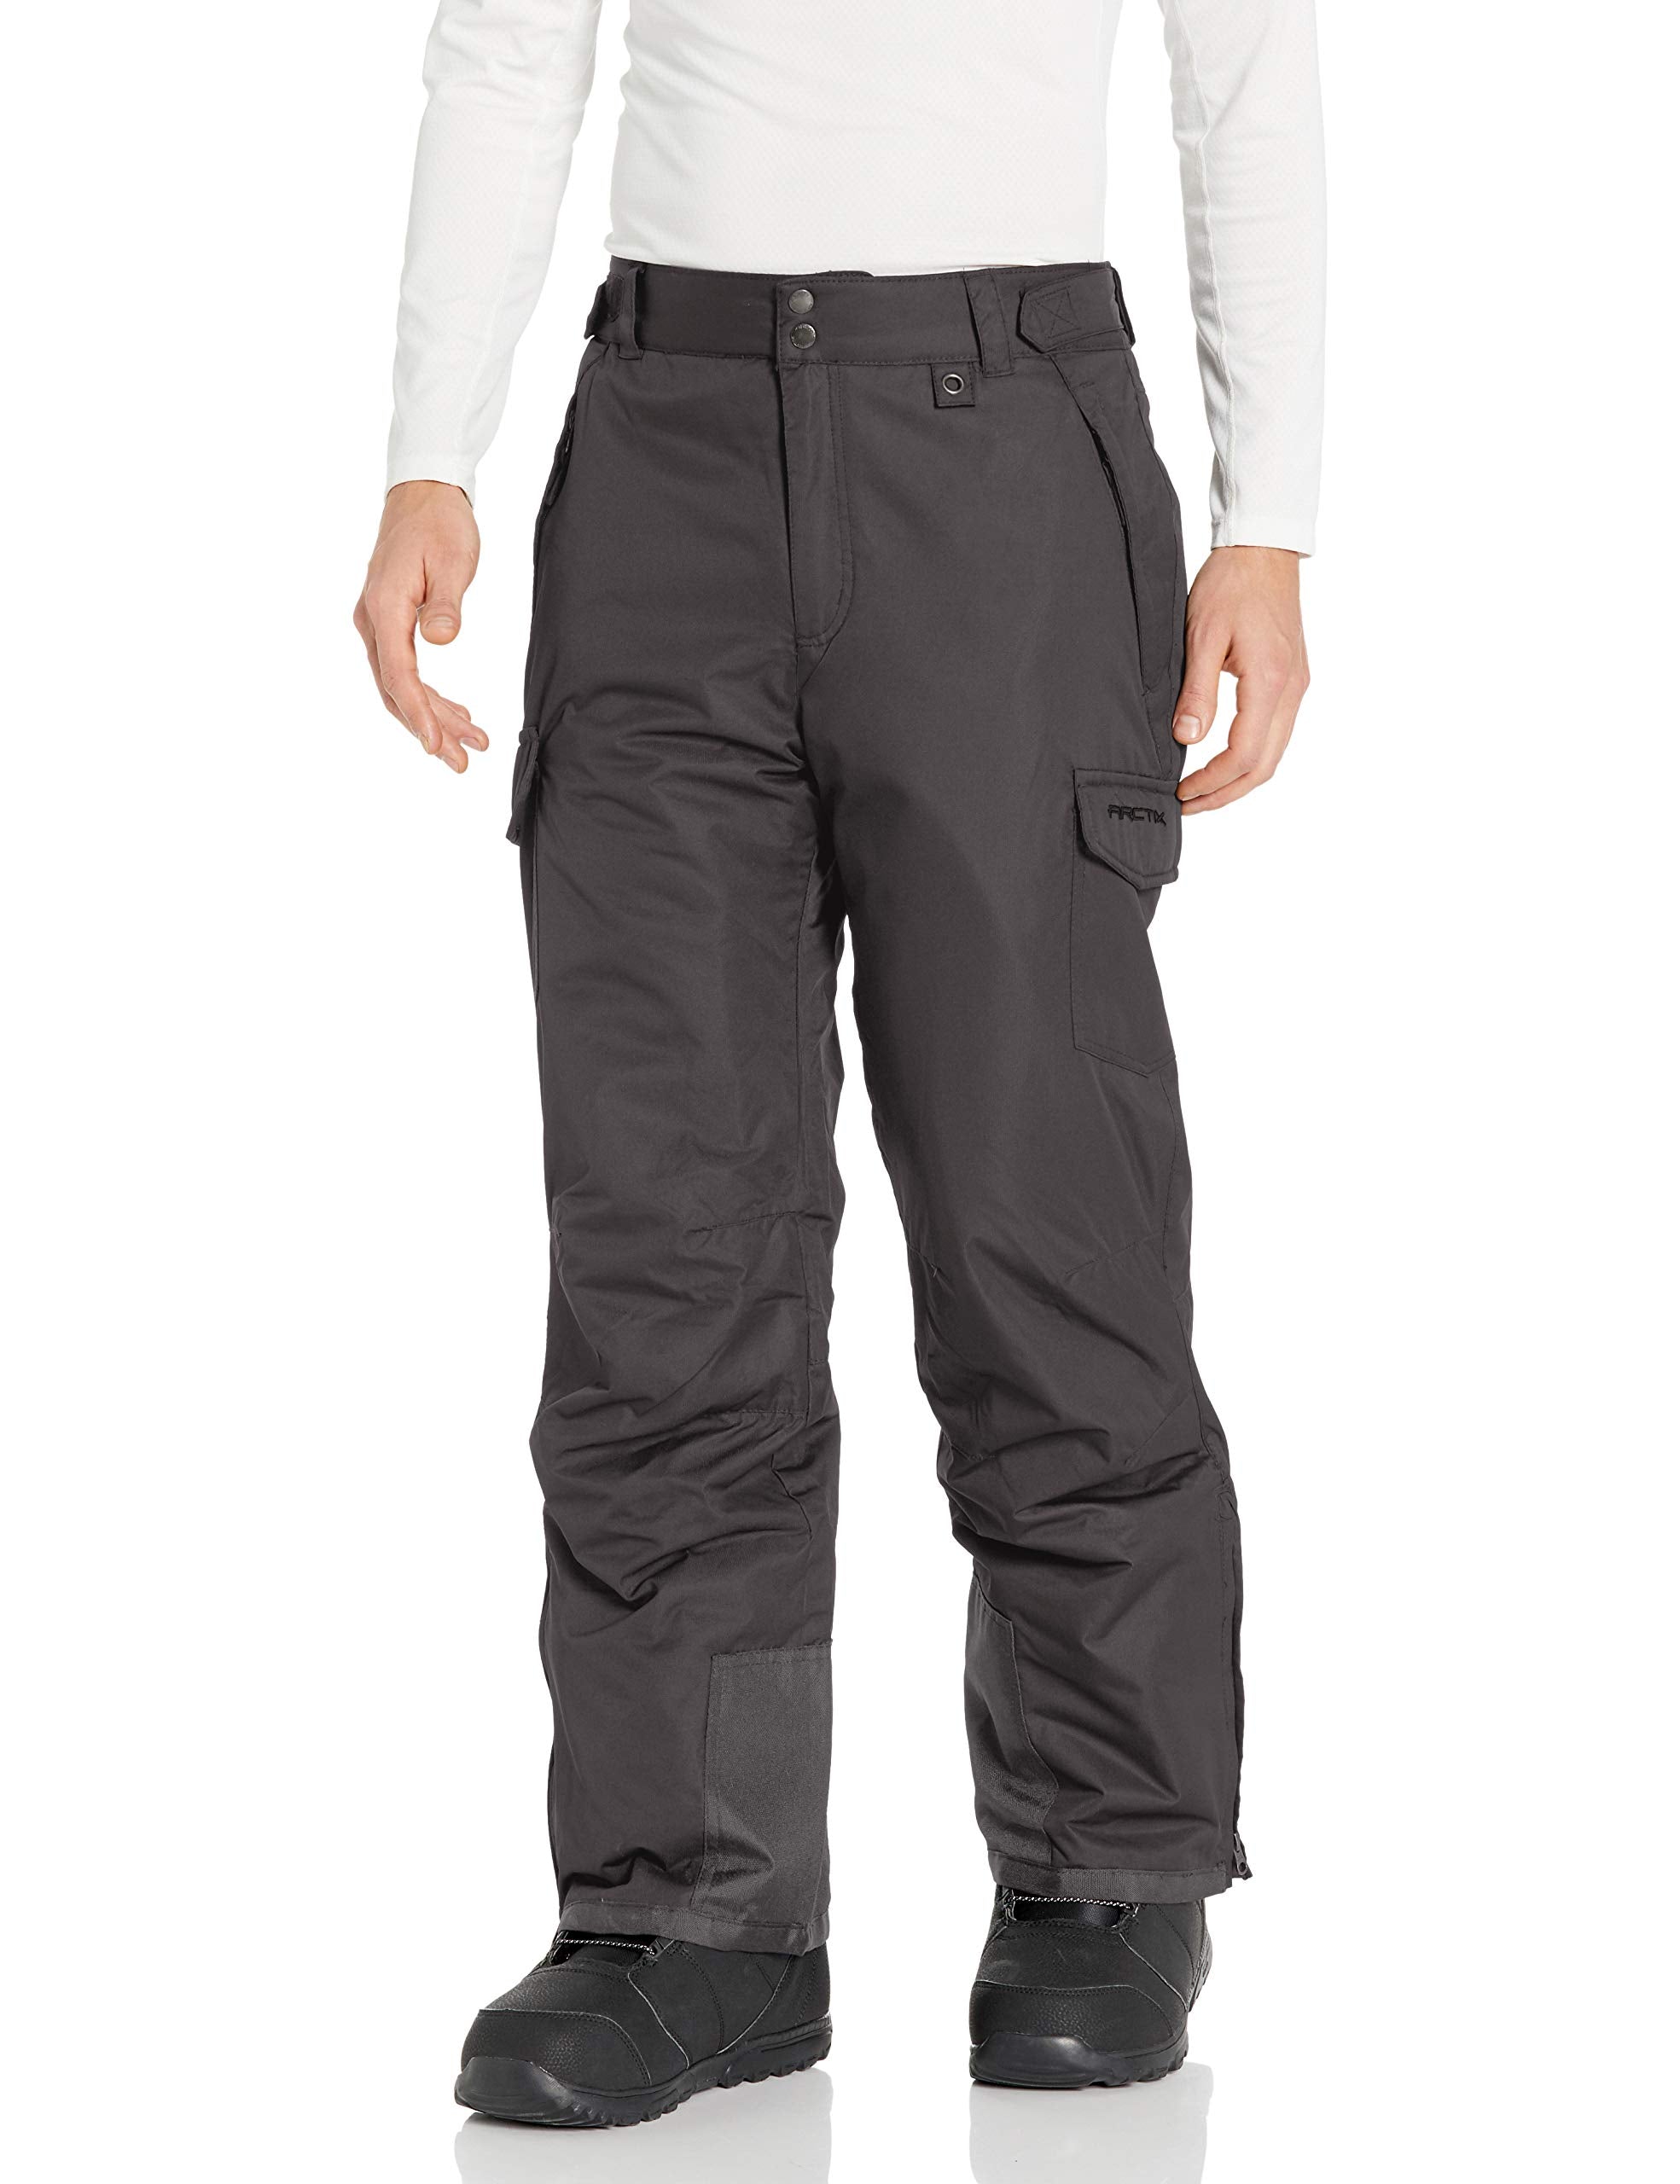 Arctix Men's Essential Snow Pants 32 - Charcoal / Large/32 Inseam